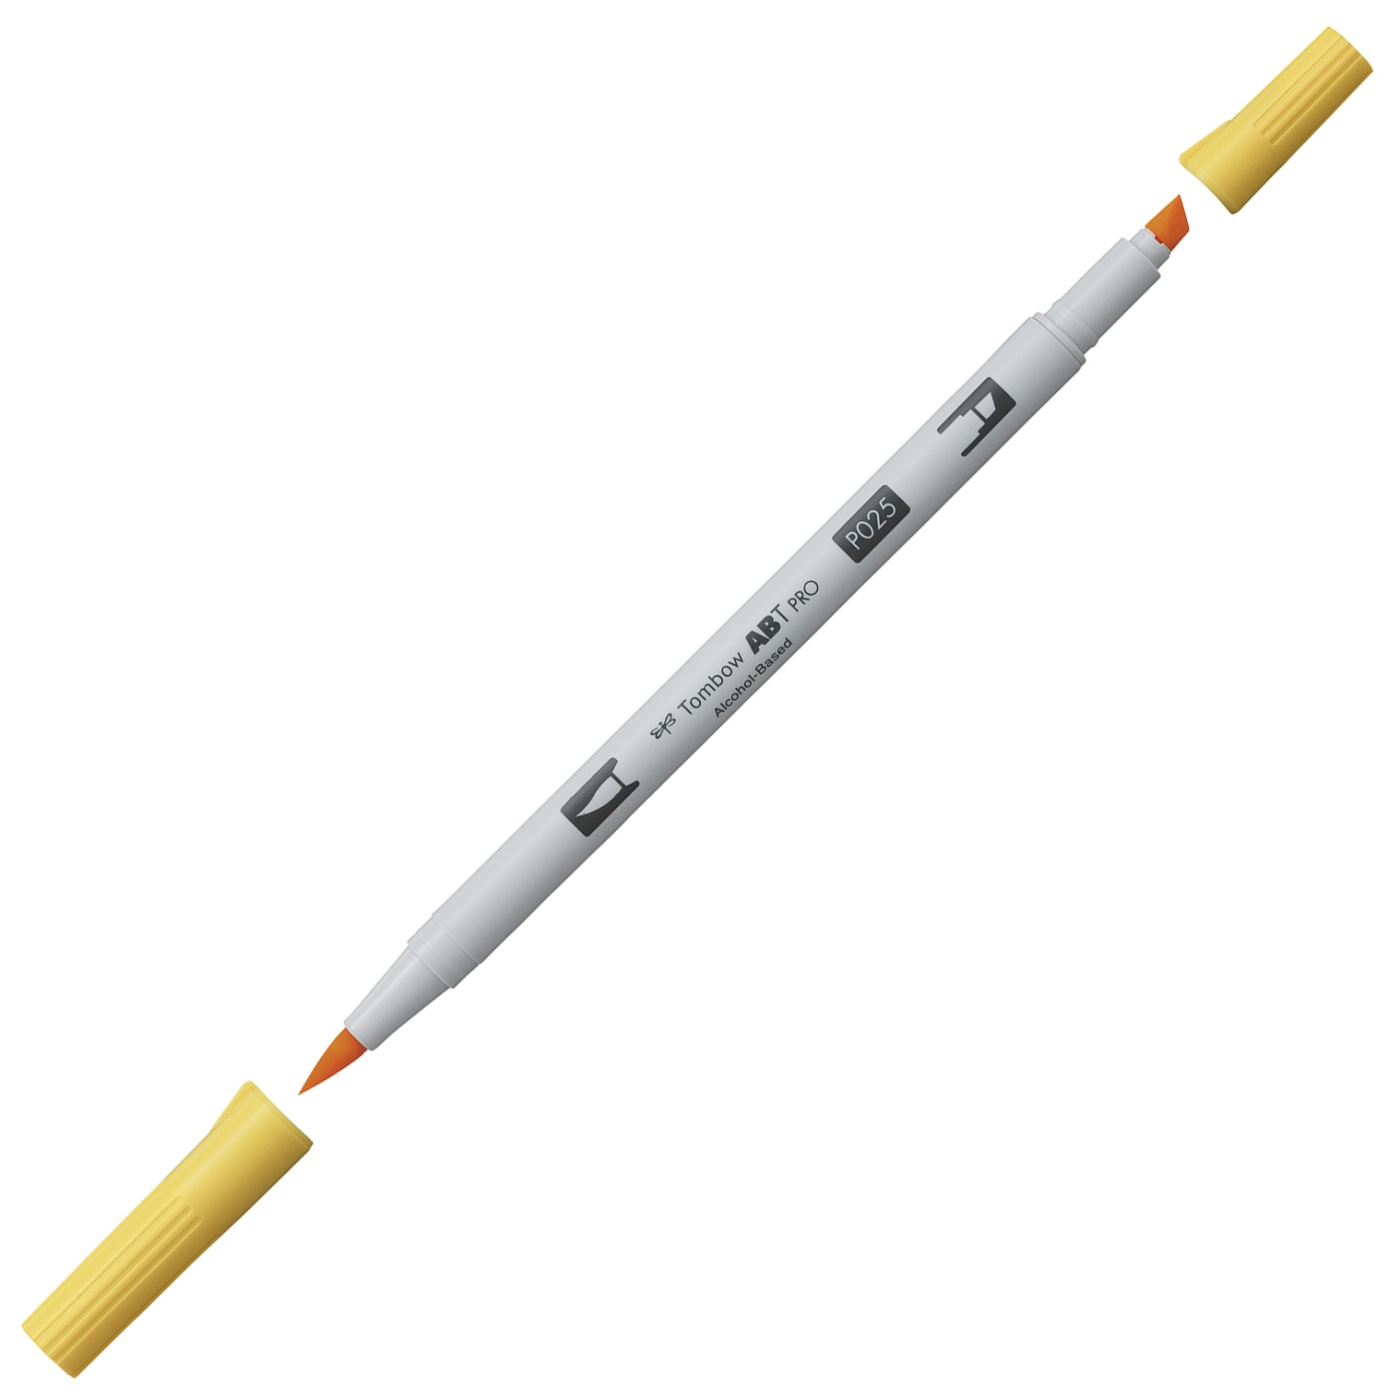 ABT PRO Dual Brush Pen 12-setti Pastelli ryhmässä Kynät / Taiteilijakynät / Sivellintussit @ Pen Store (101255)